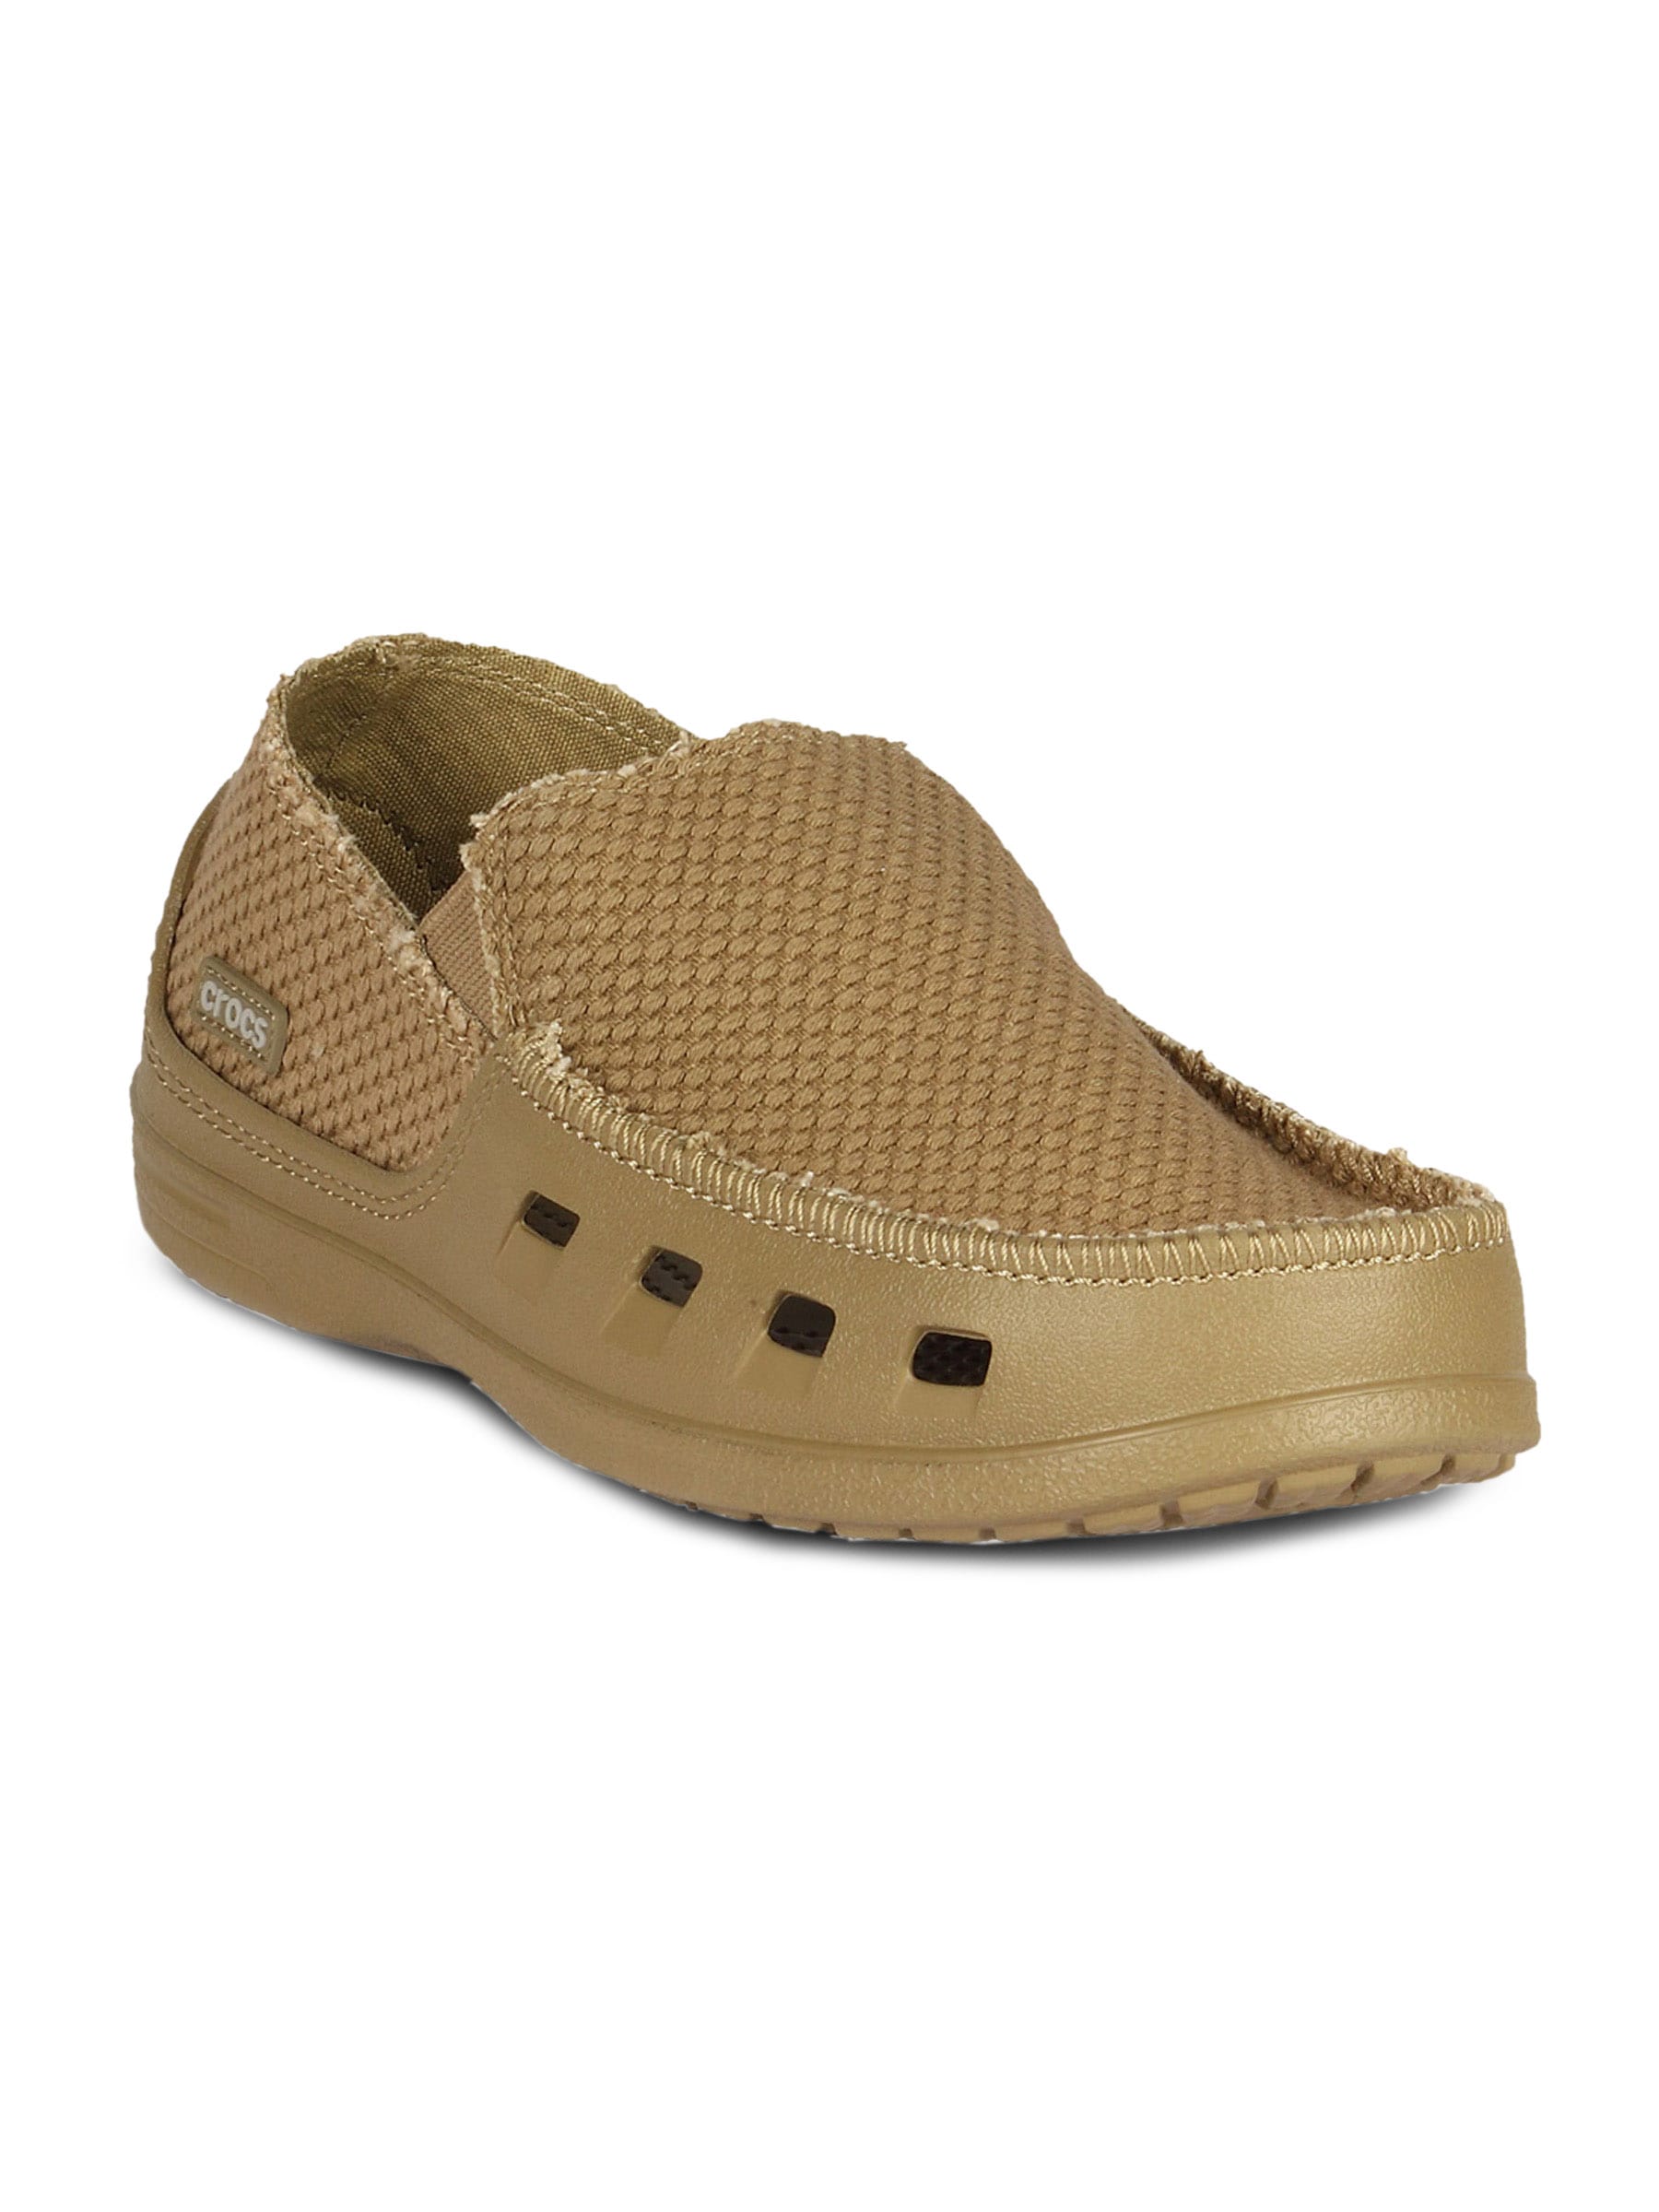 Crocs Men's Tideline Canvas Khaki Shoe